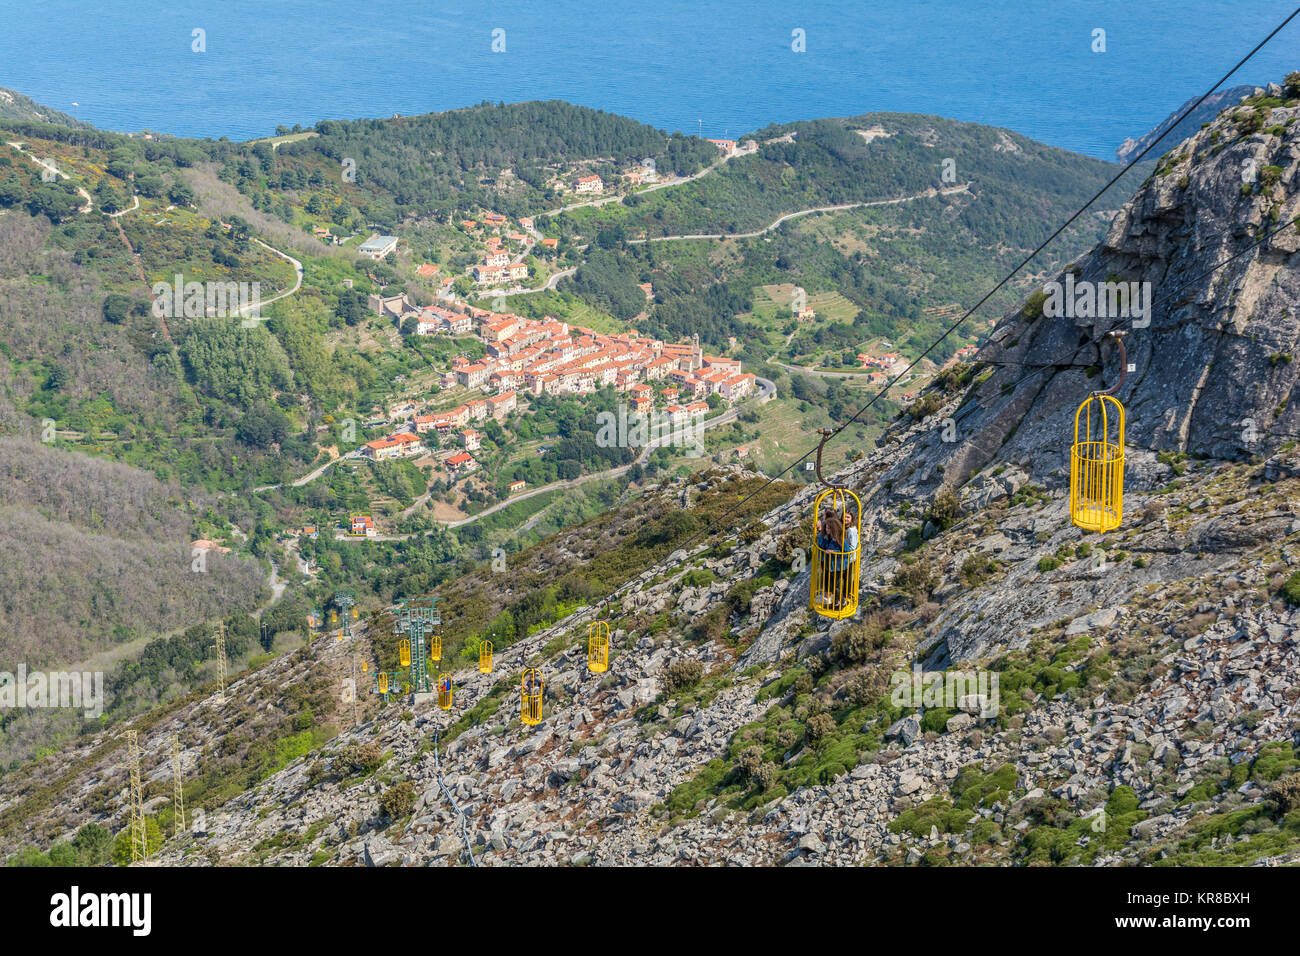 La funivia per la cima del monte Capanne in Isola d'Elba. Foto Stock